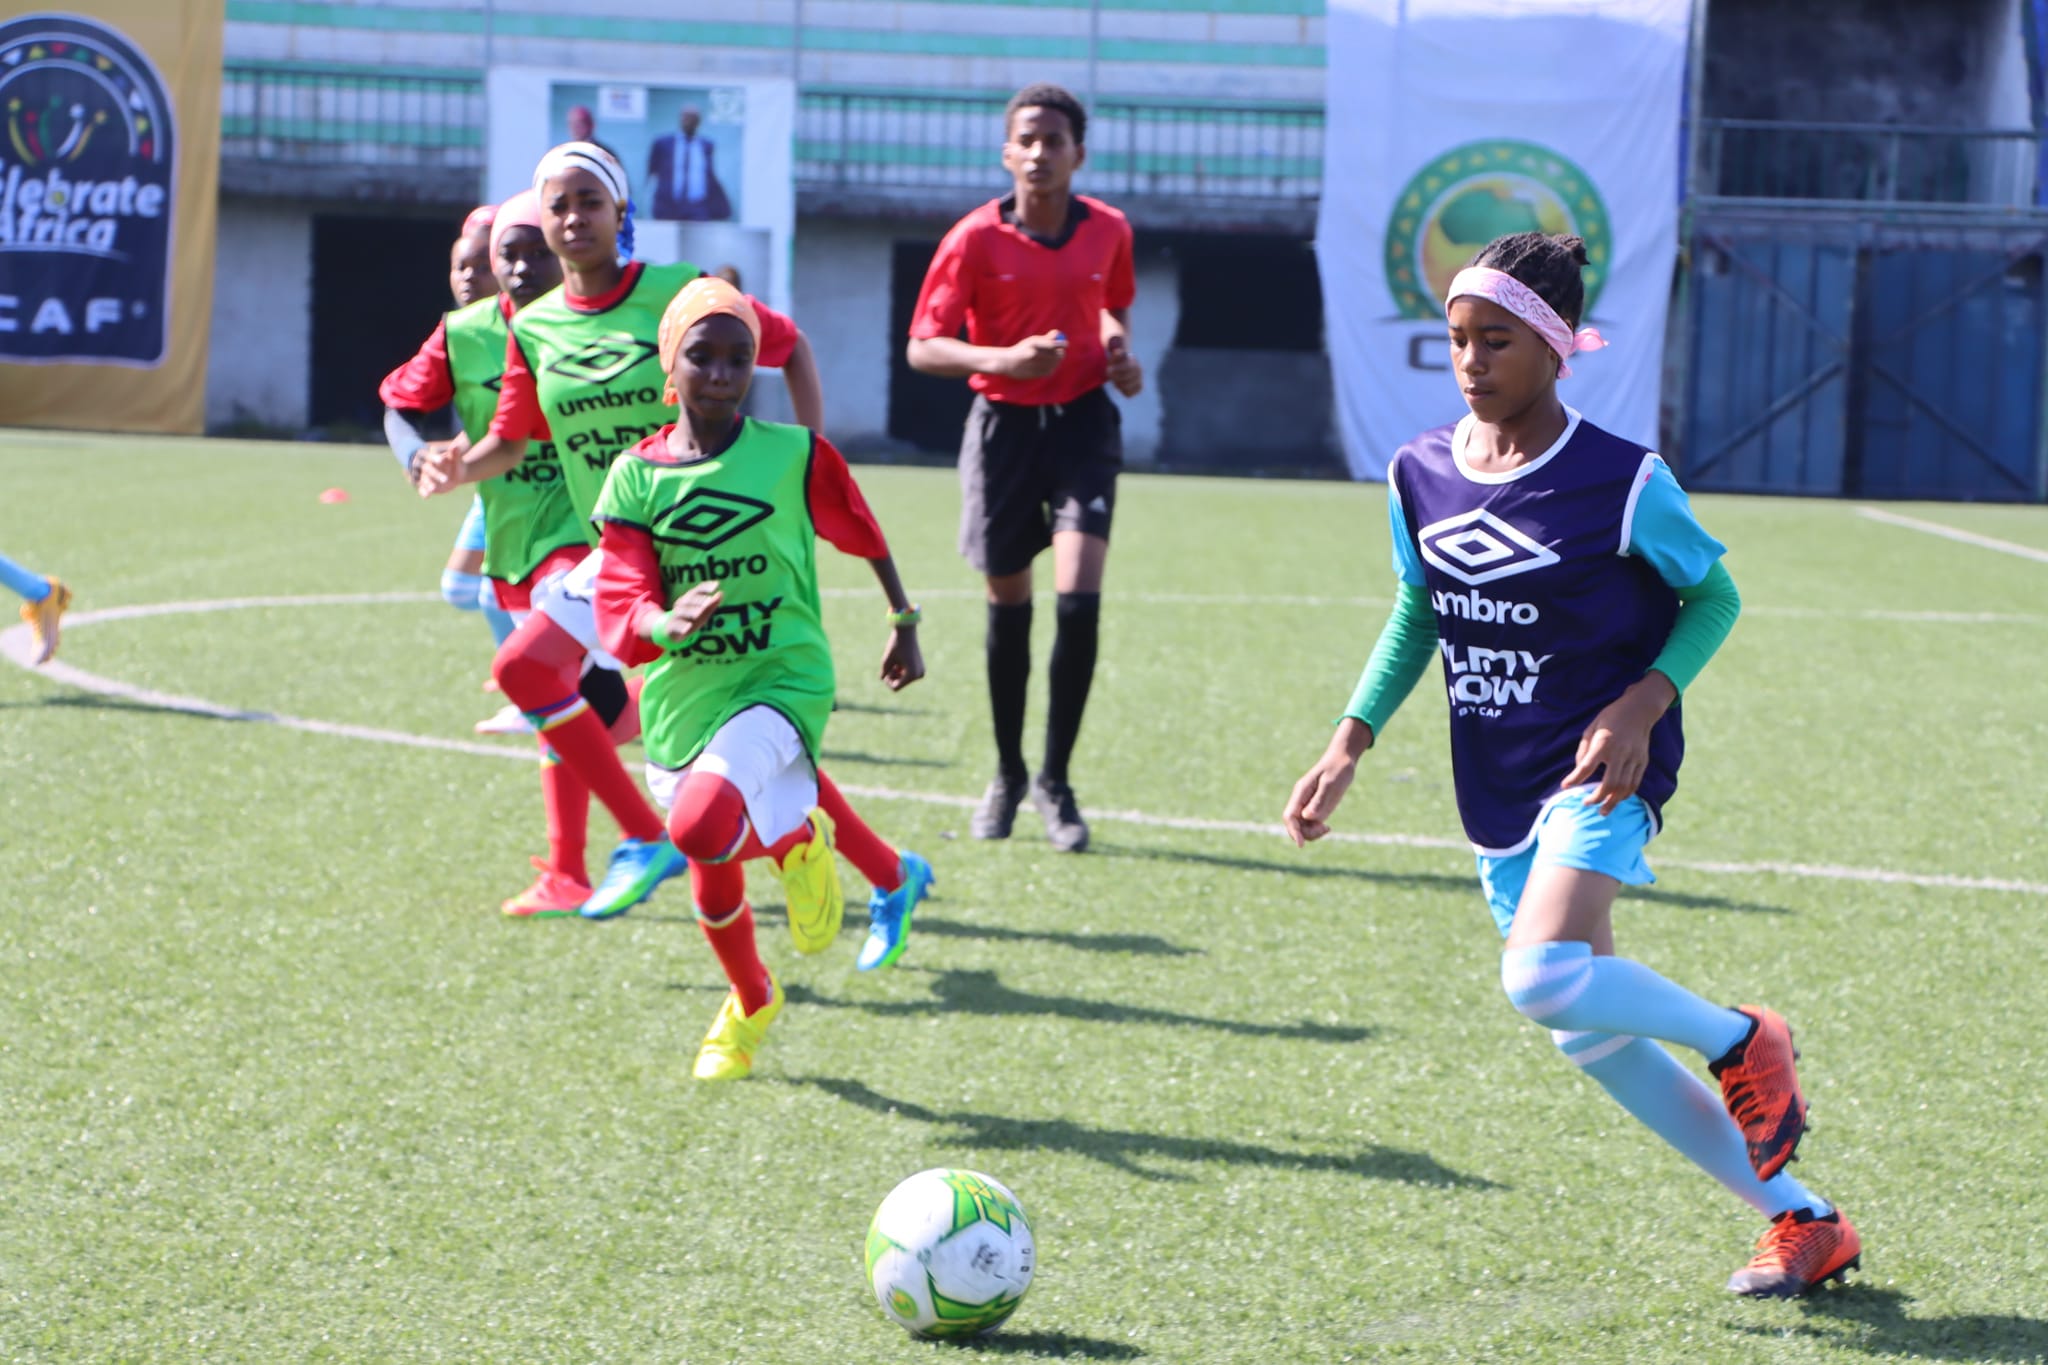 Championnat scolaire, Deux écoles comoriennes au Championnat Scolaire Africain, Comoros Football 269 | Portail du football des Comores